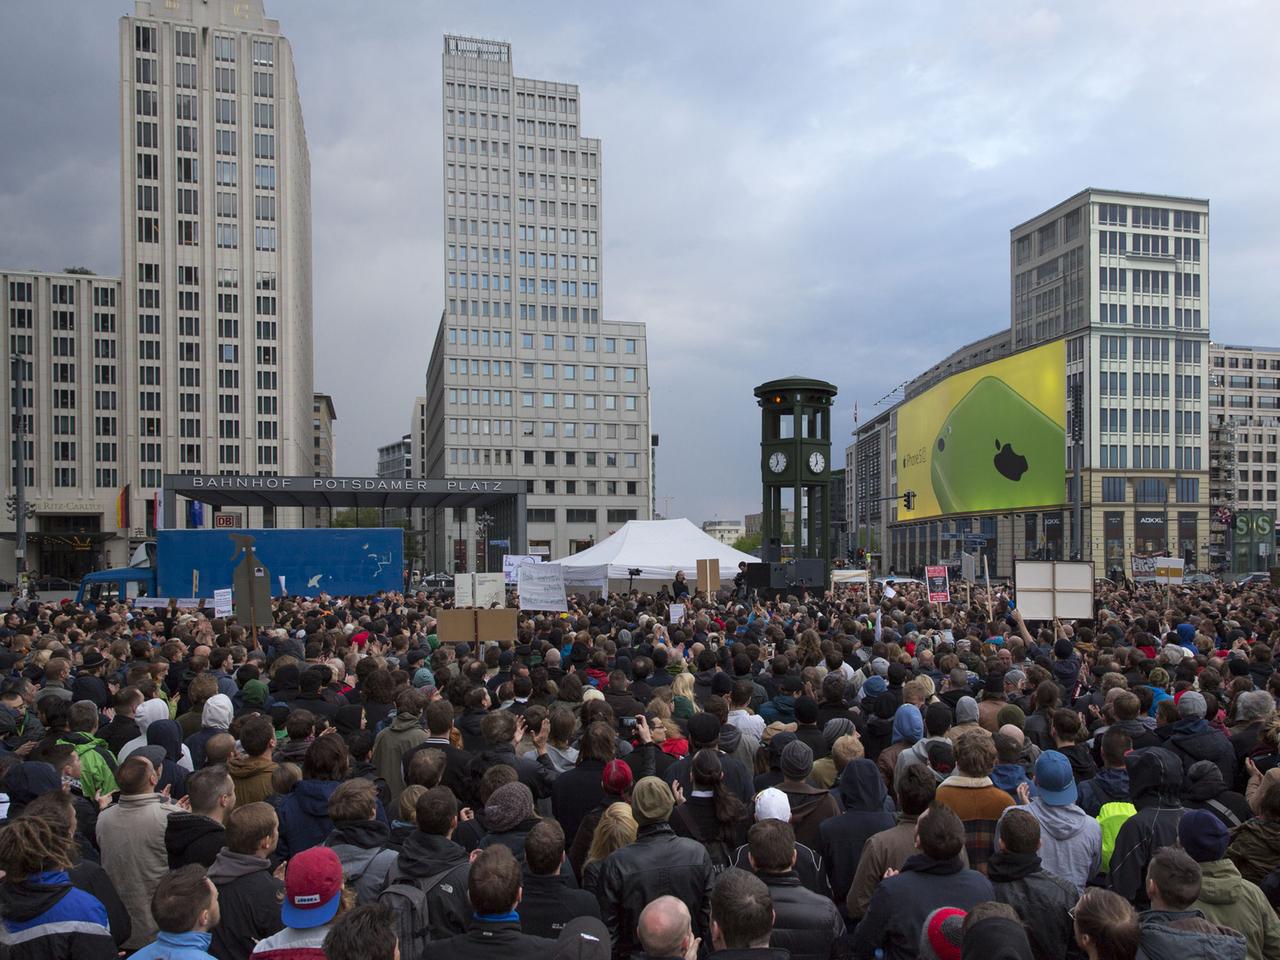 Menschen drängen sich am Potsdamer Platz in Berlin.